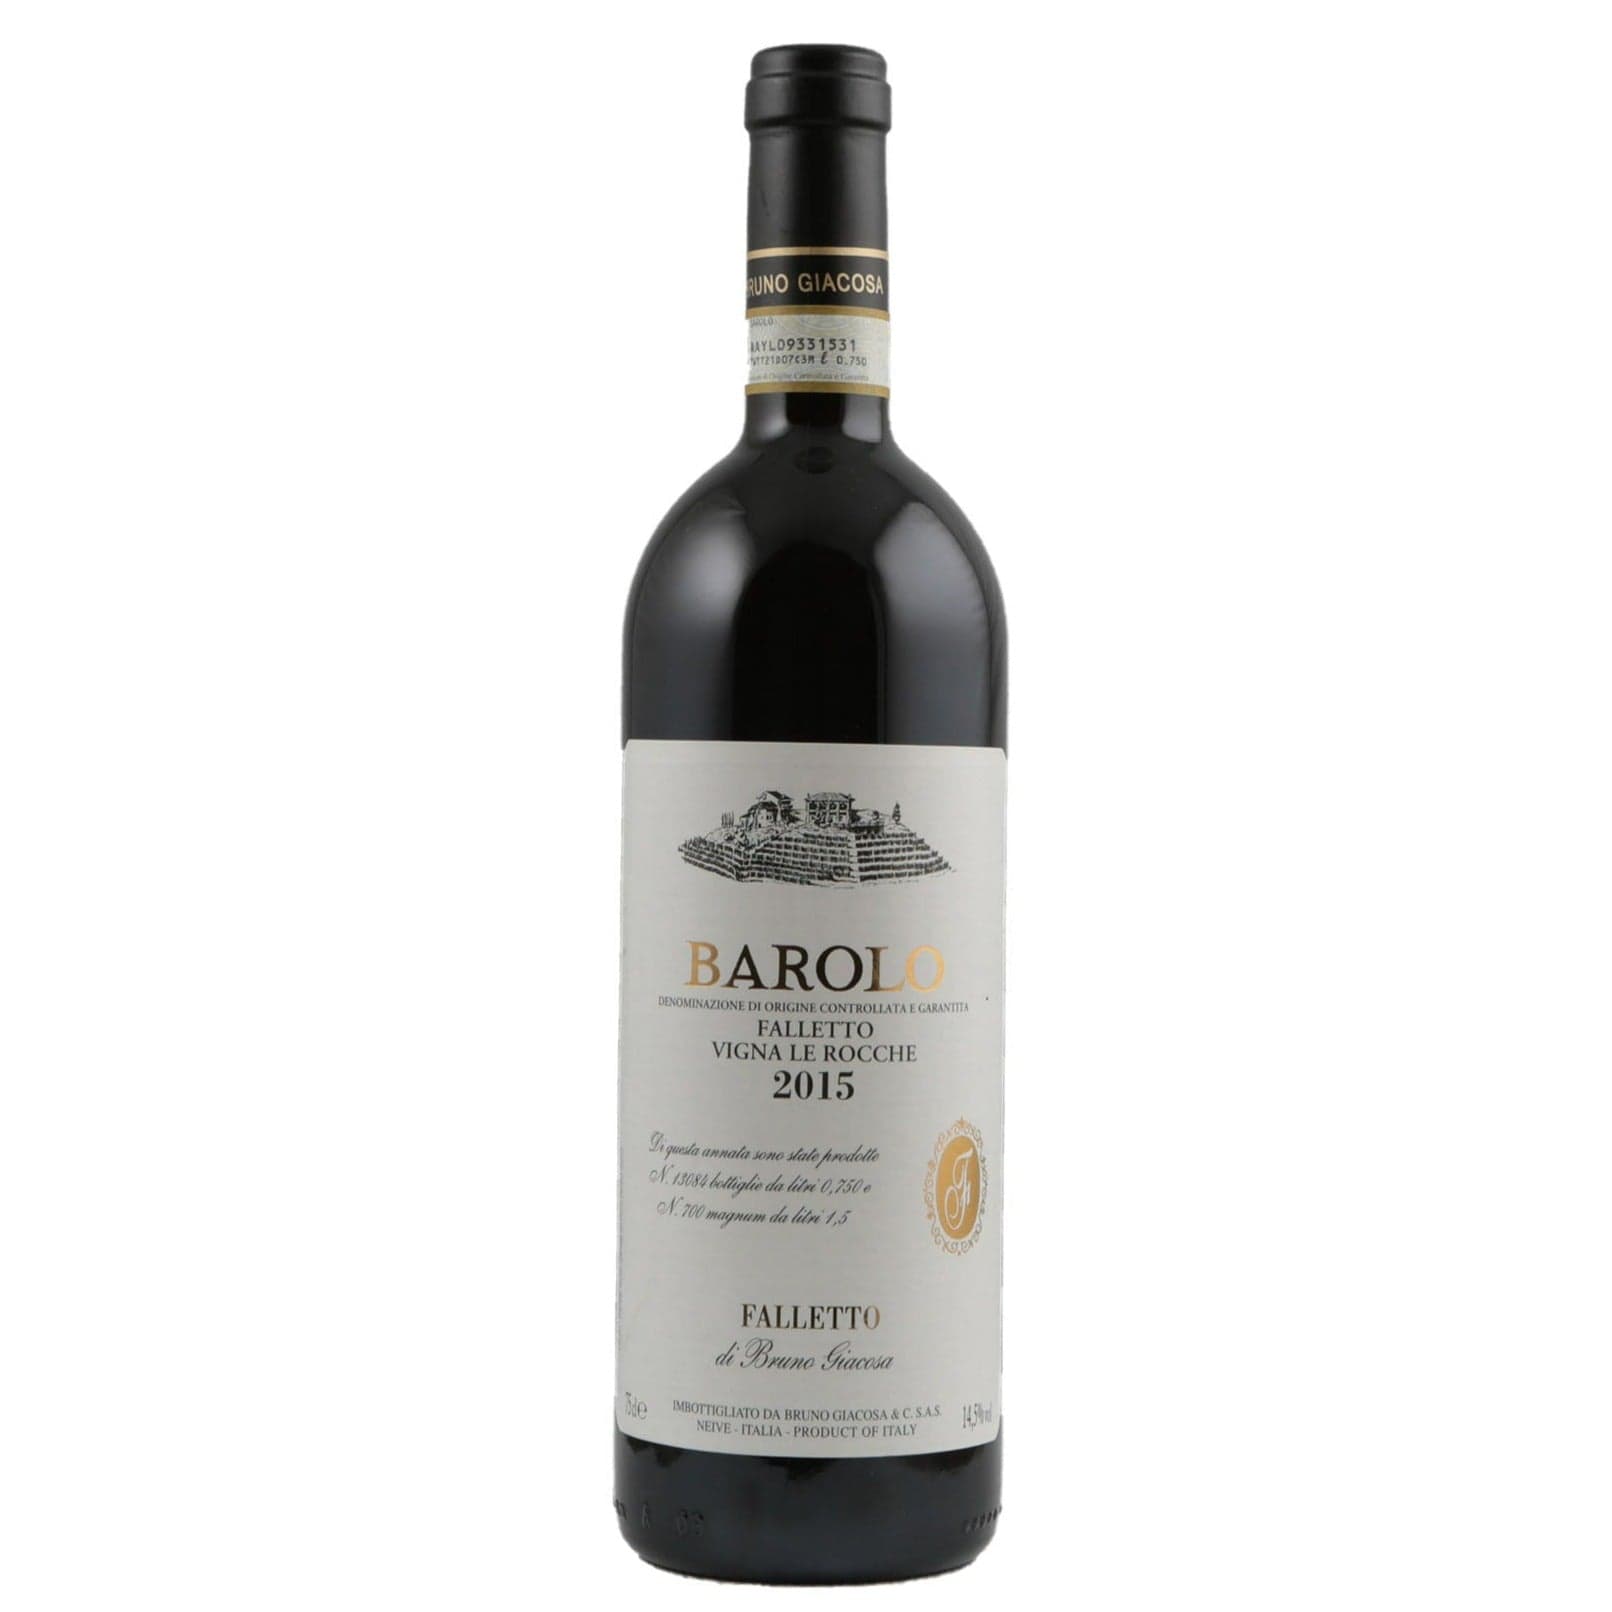 Single bottle of Red wine Bruno Giacosa, Vigna Le Rocche, Barolo, 2015 100% Nebbiolo